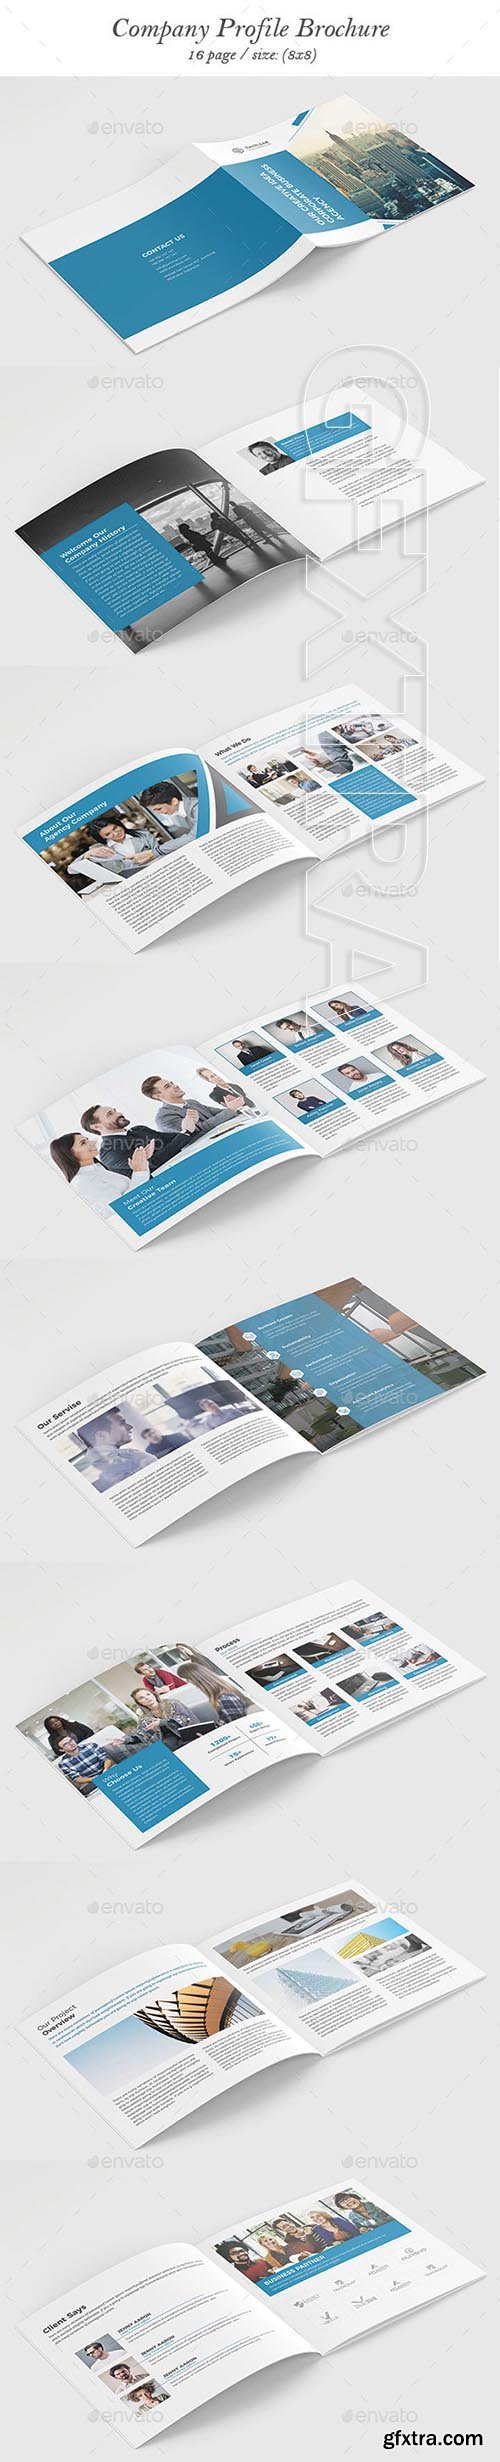 GraphicRiver - Company Profile Brochure 21072288